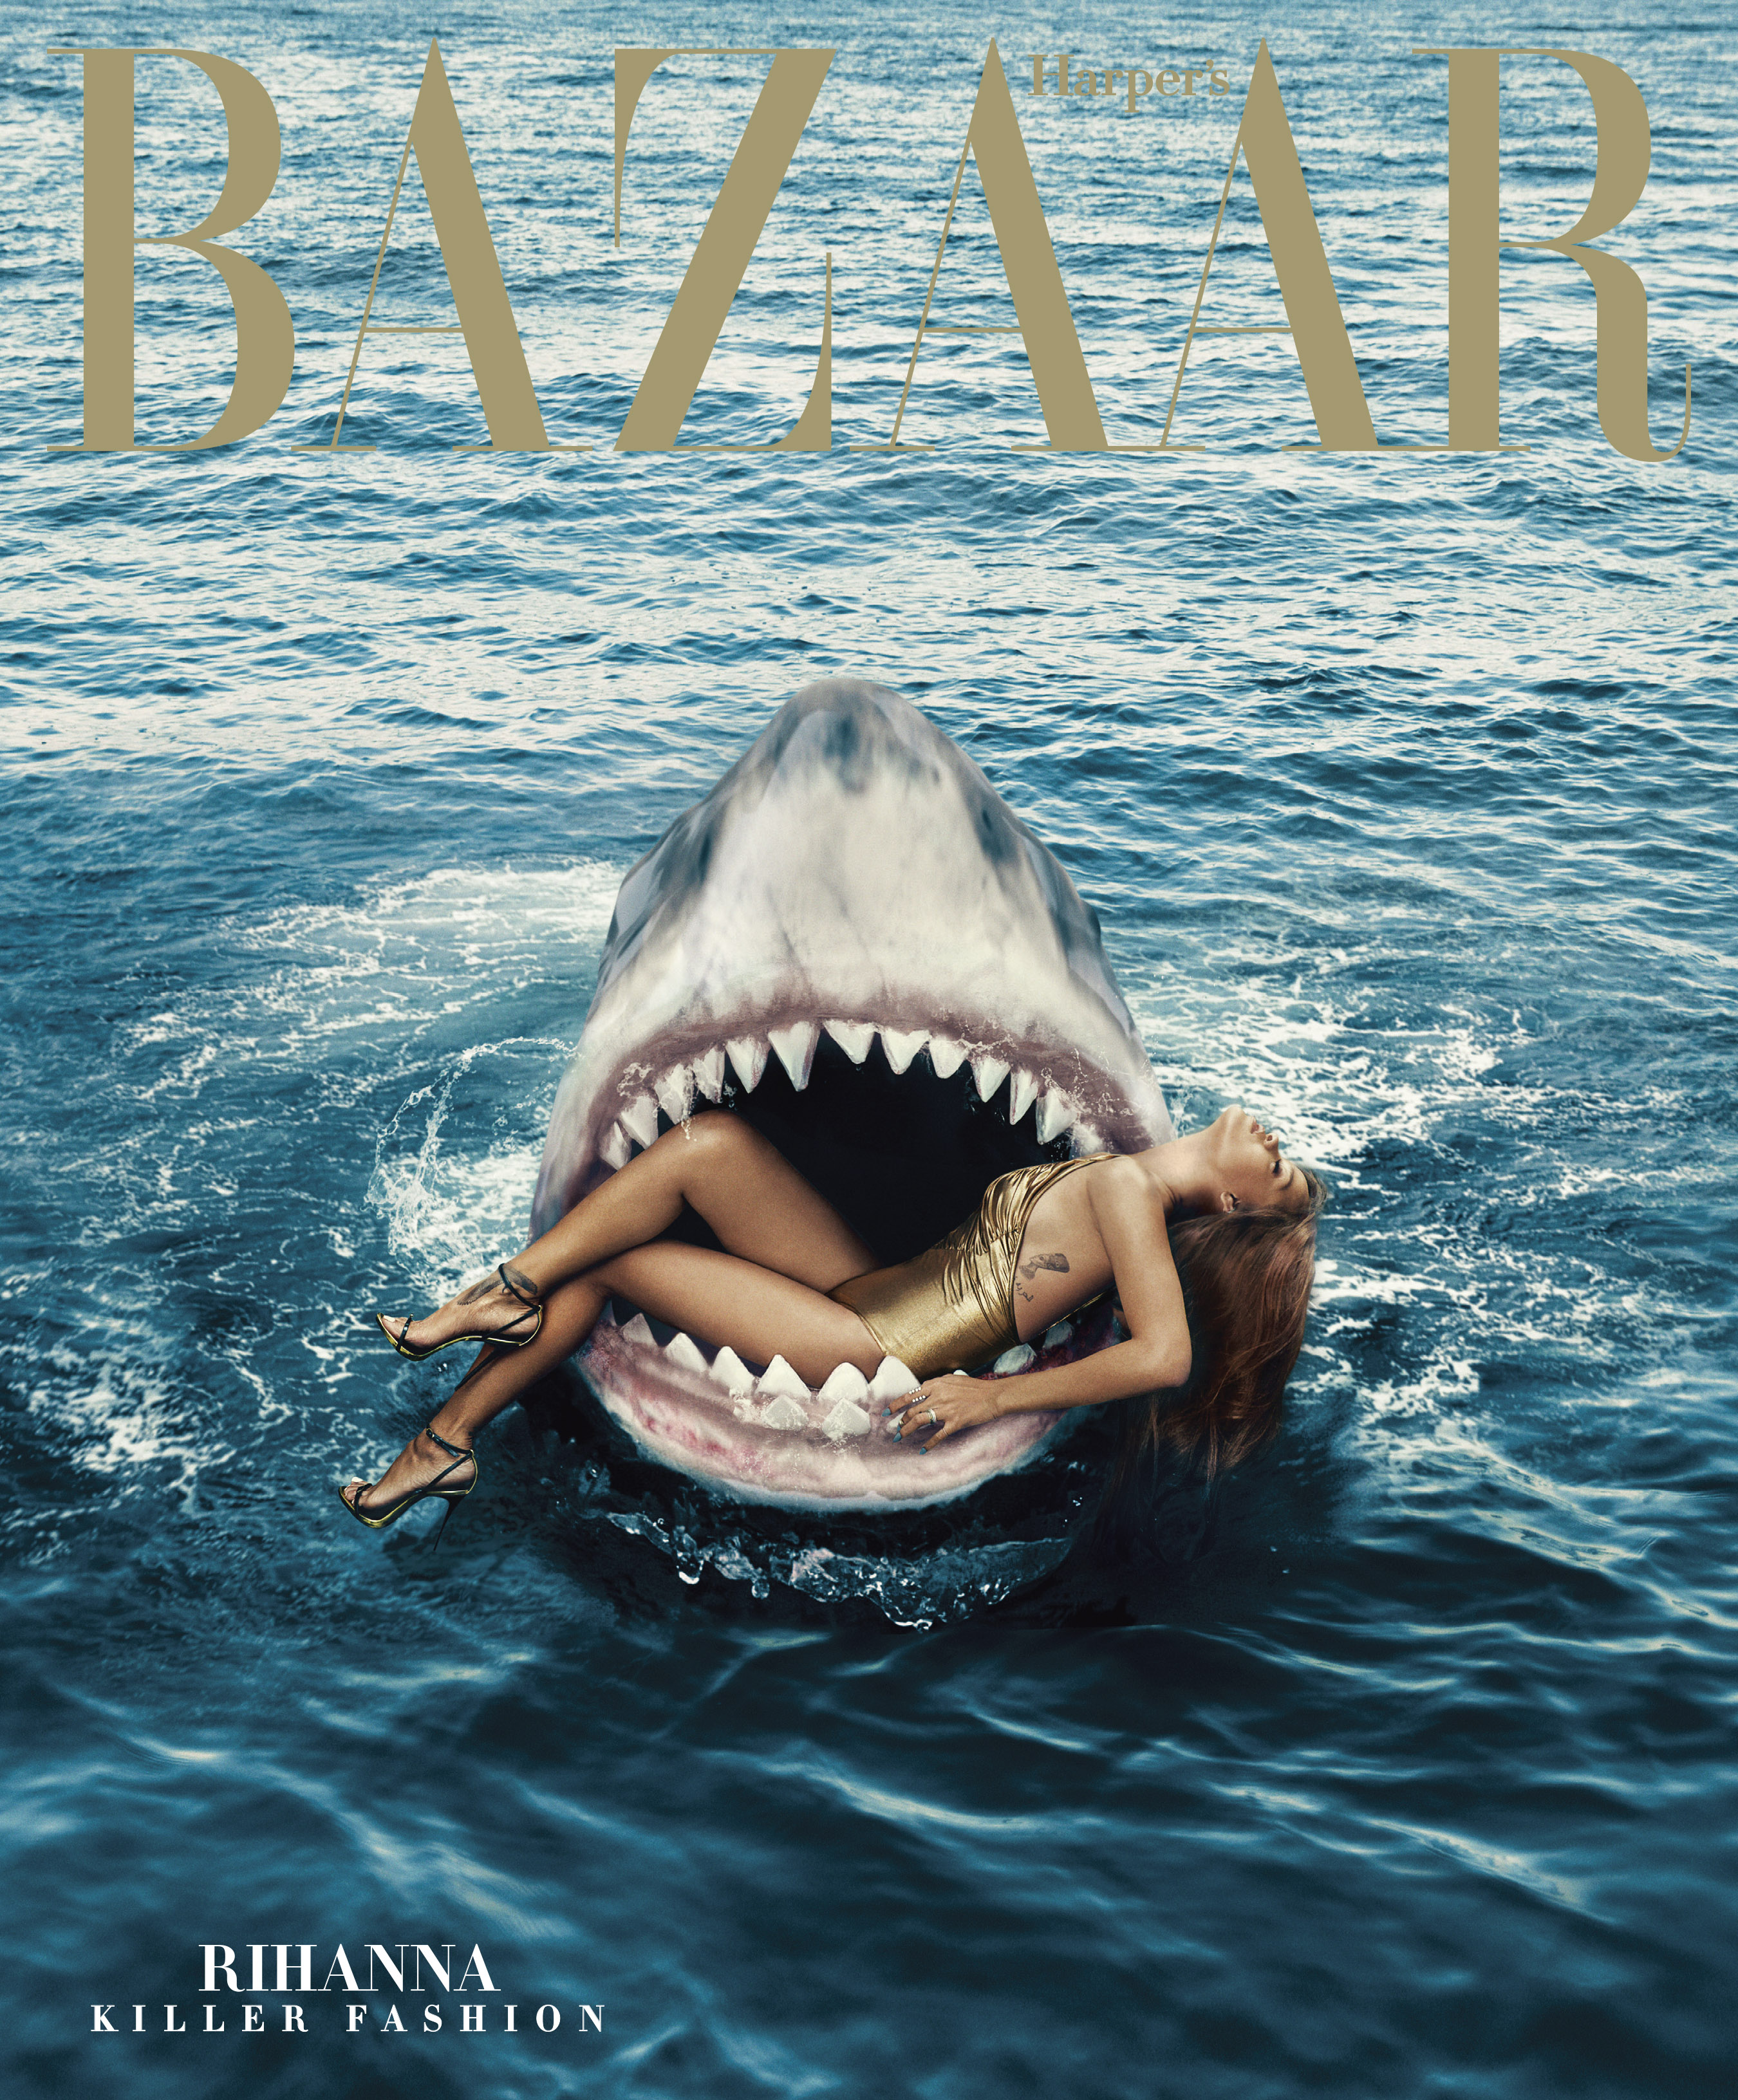 Harper's Bazaar-"Rihanna: Killer Fashion," March